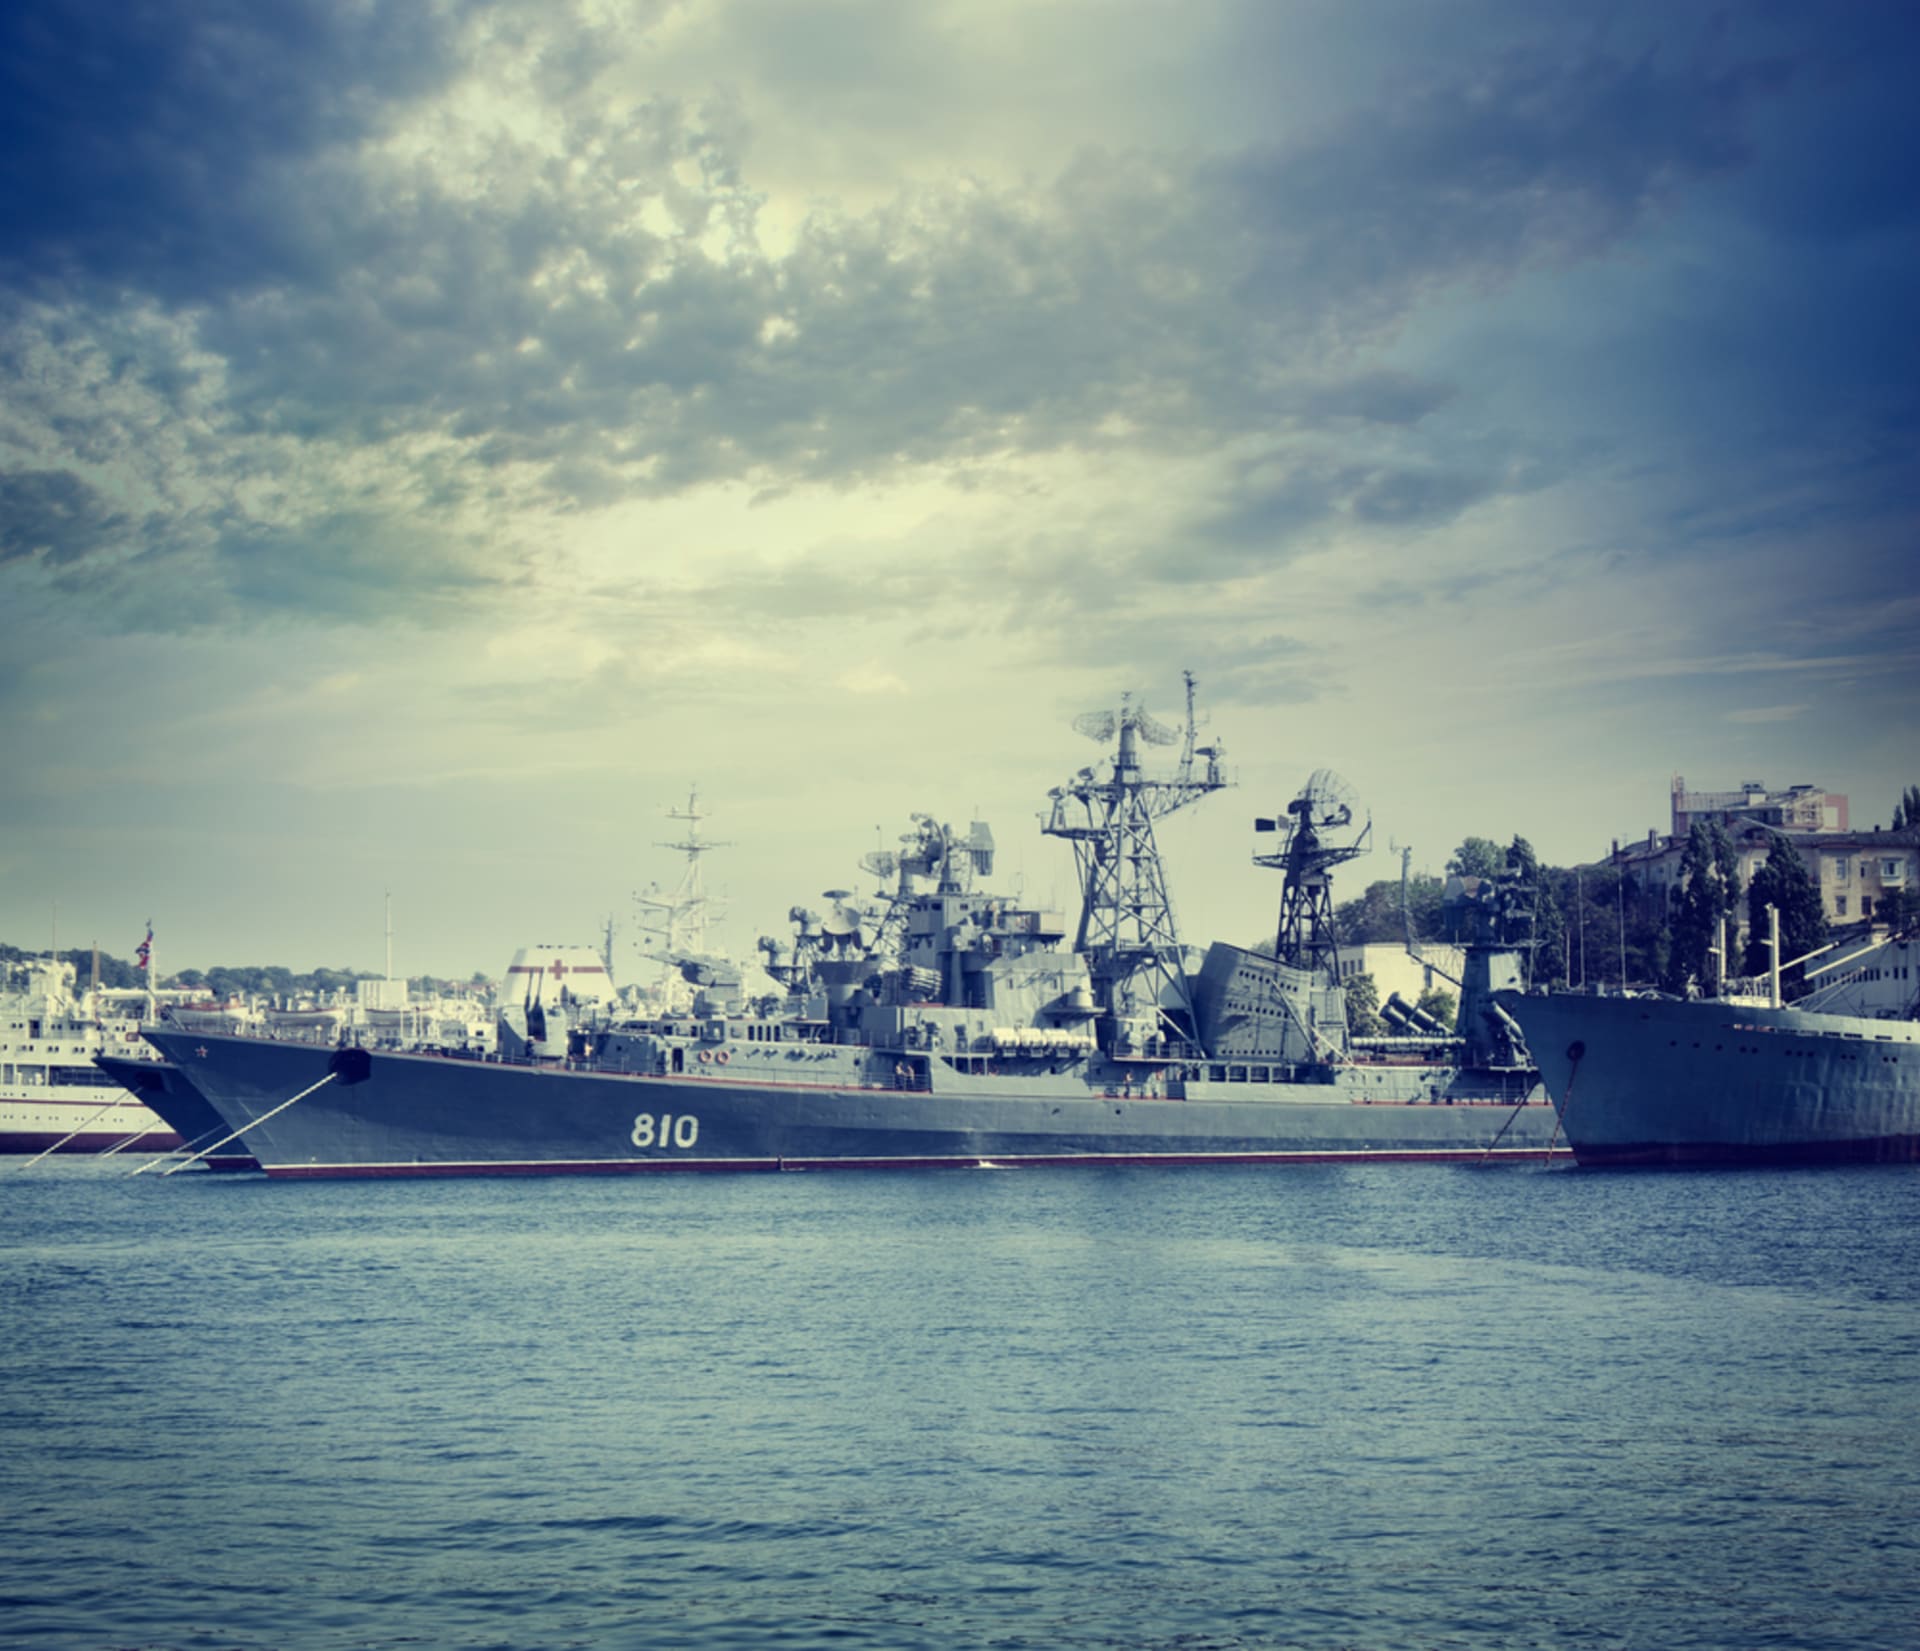 Součástí Černomořské flotily je i raketová fregata Ladnyj (třída Krivak)